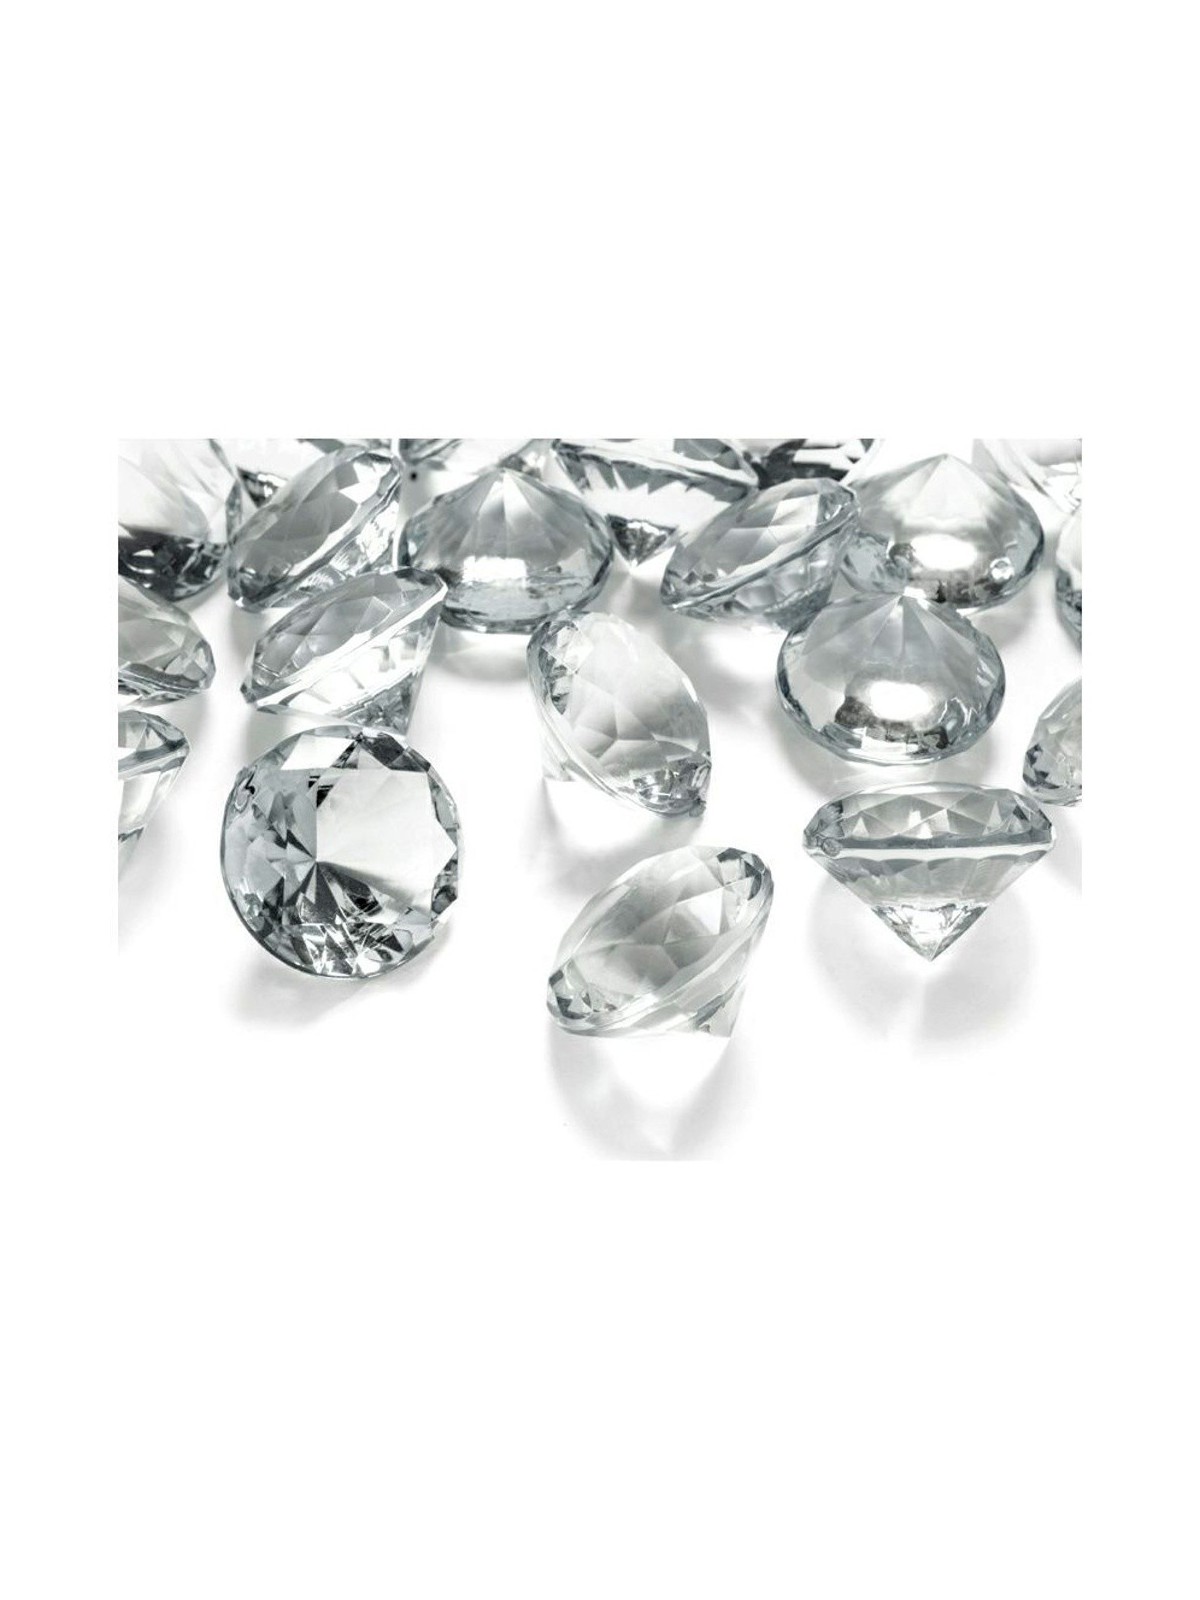 Ozdobné diamanty - průhledné - 1,9cm